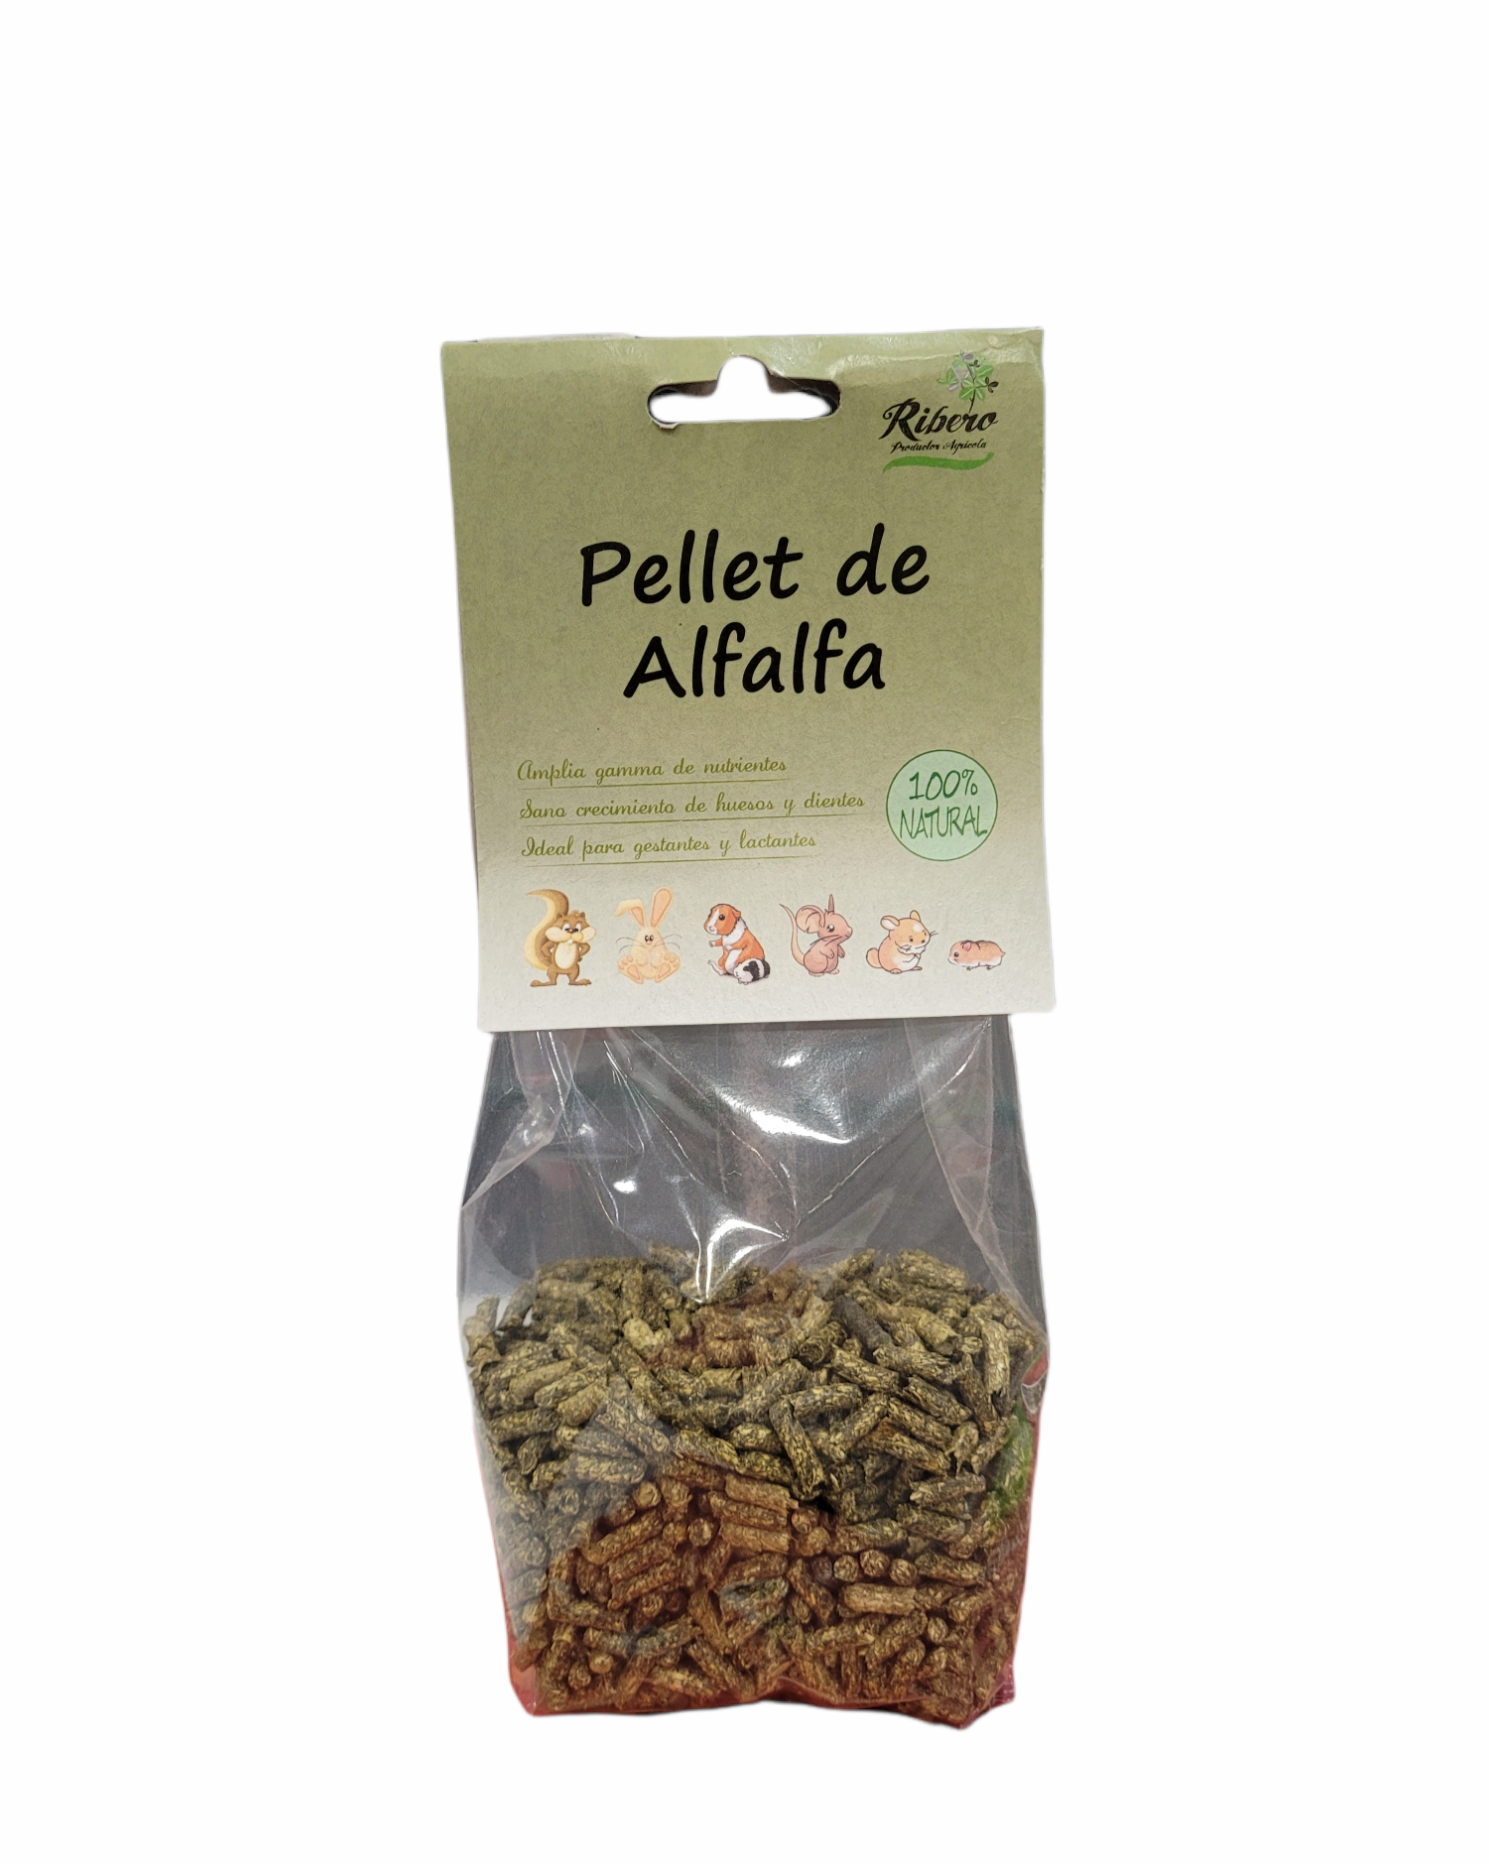 Ribero pellets de alfalfa